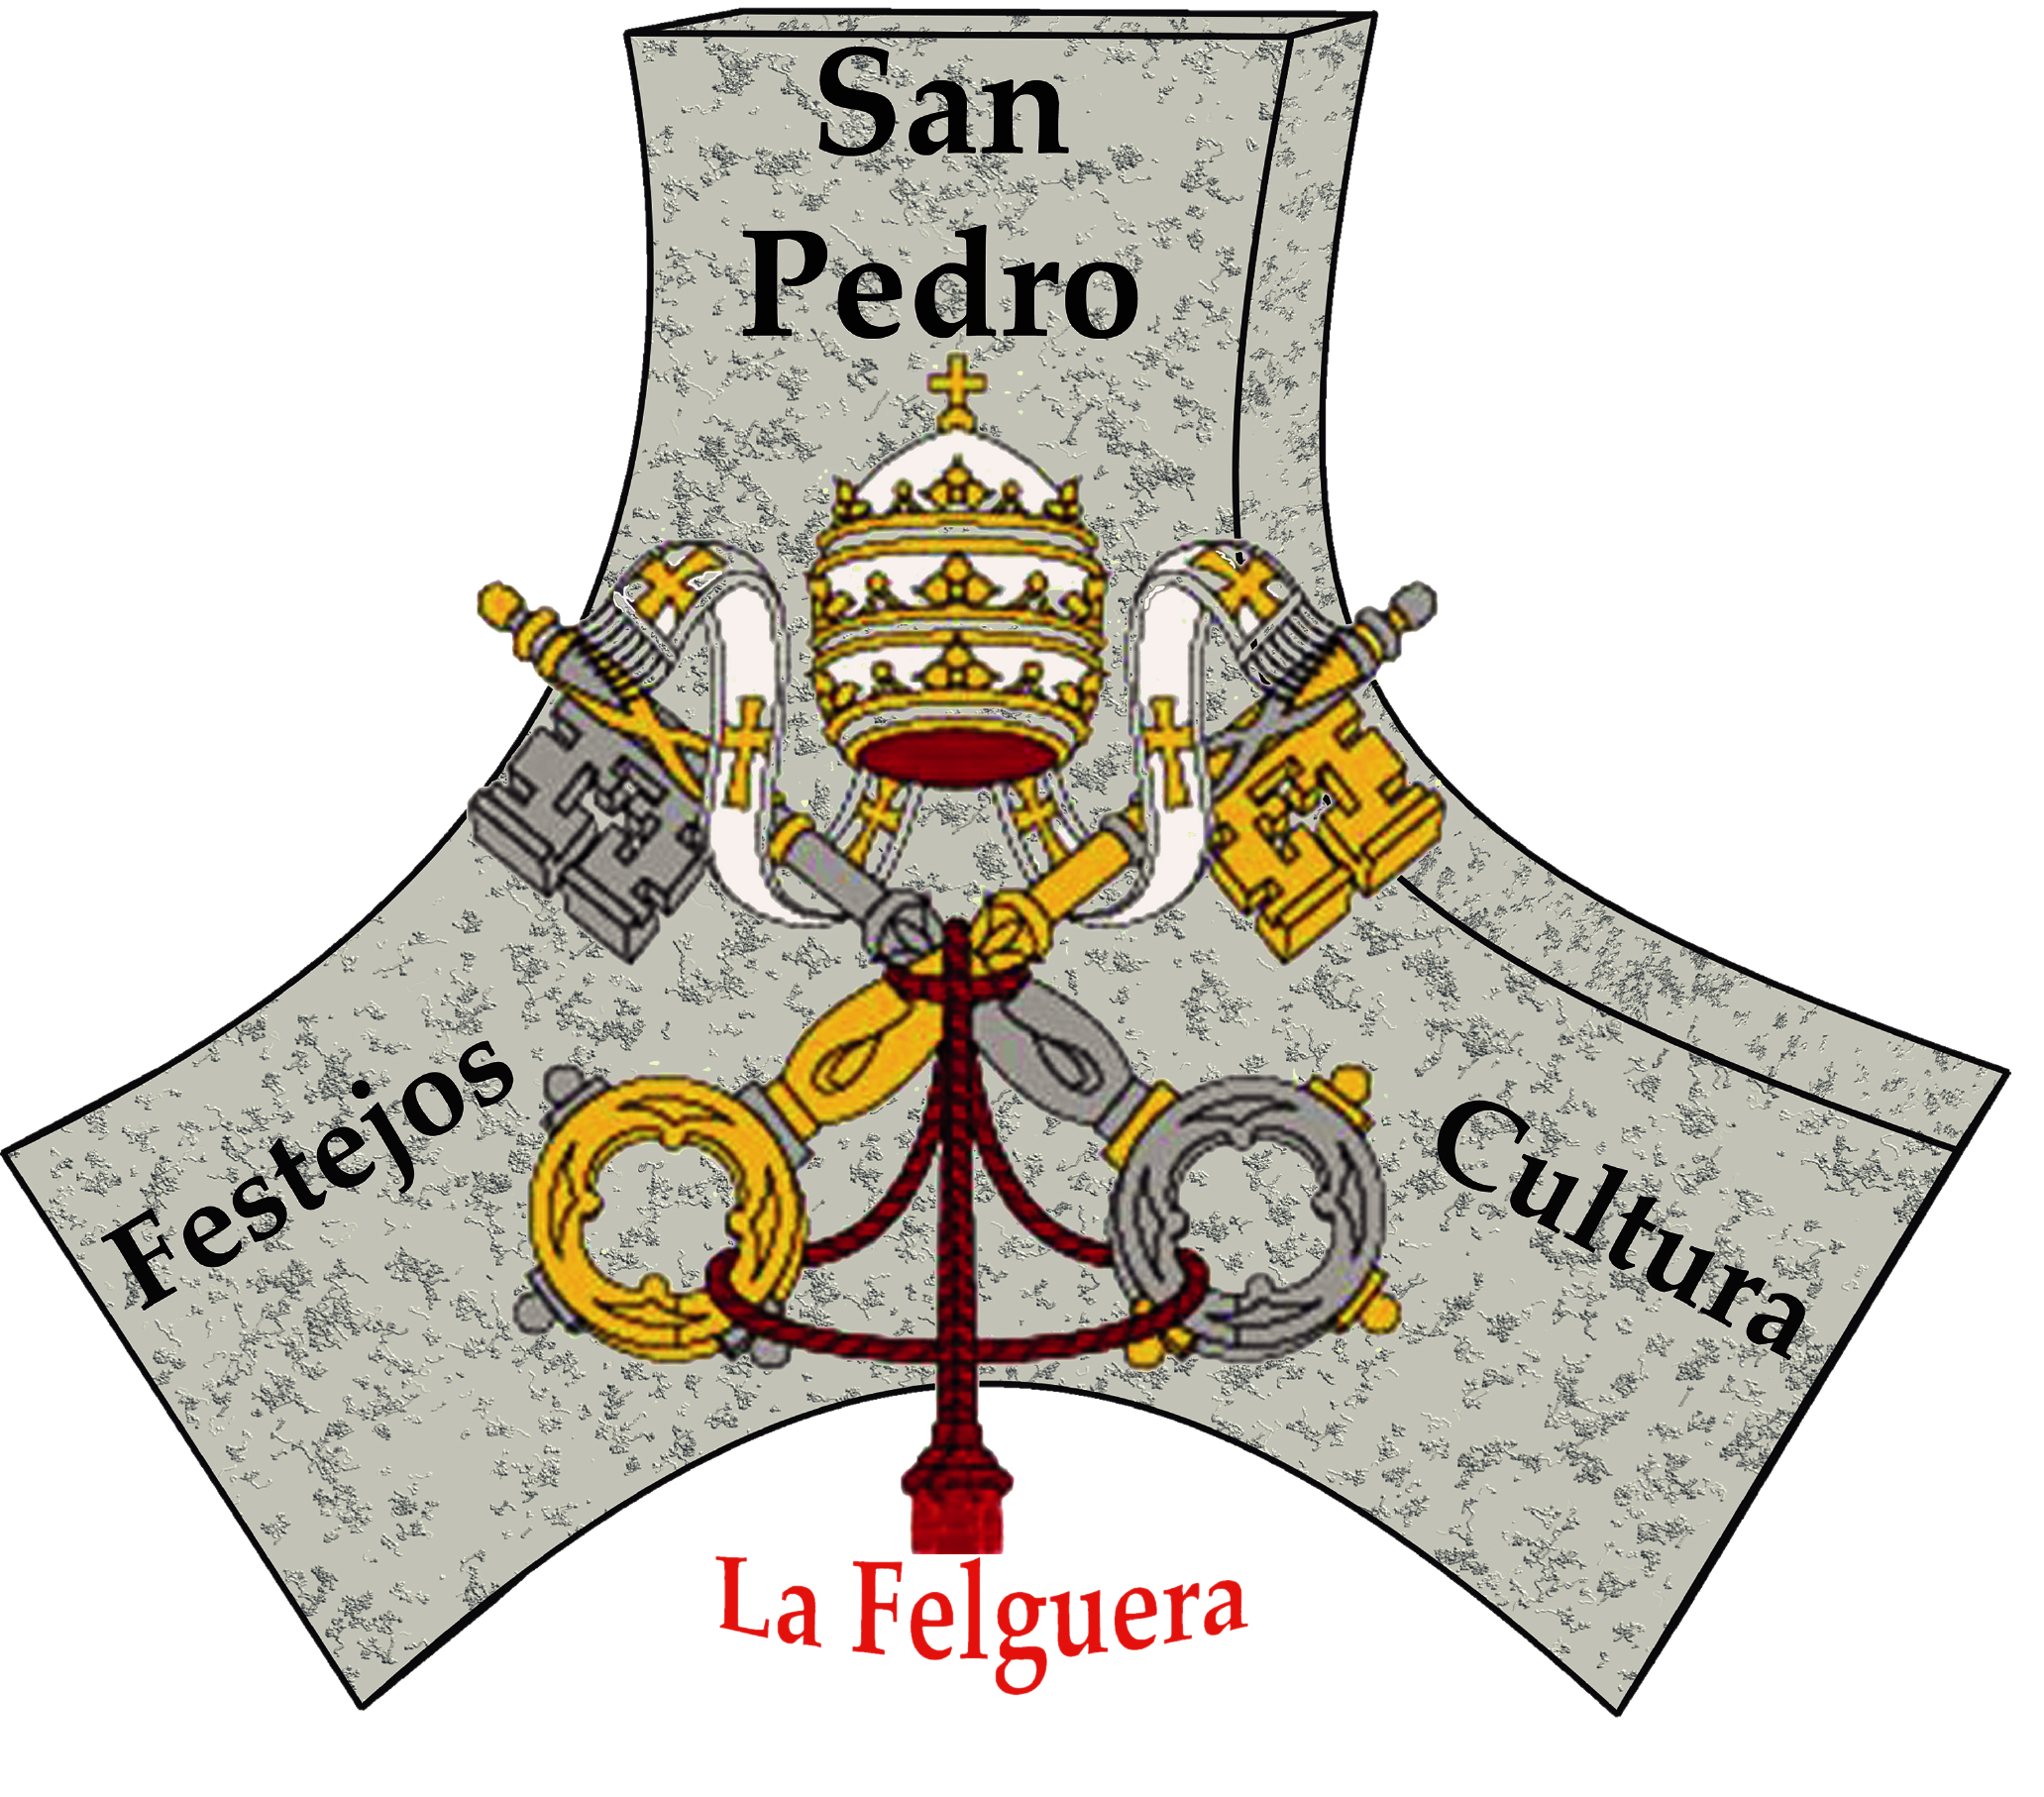 Sociedad de Festejos y Cultura "San Pedro" La Felguera